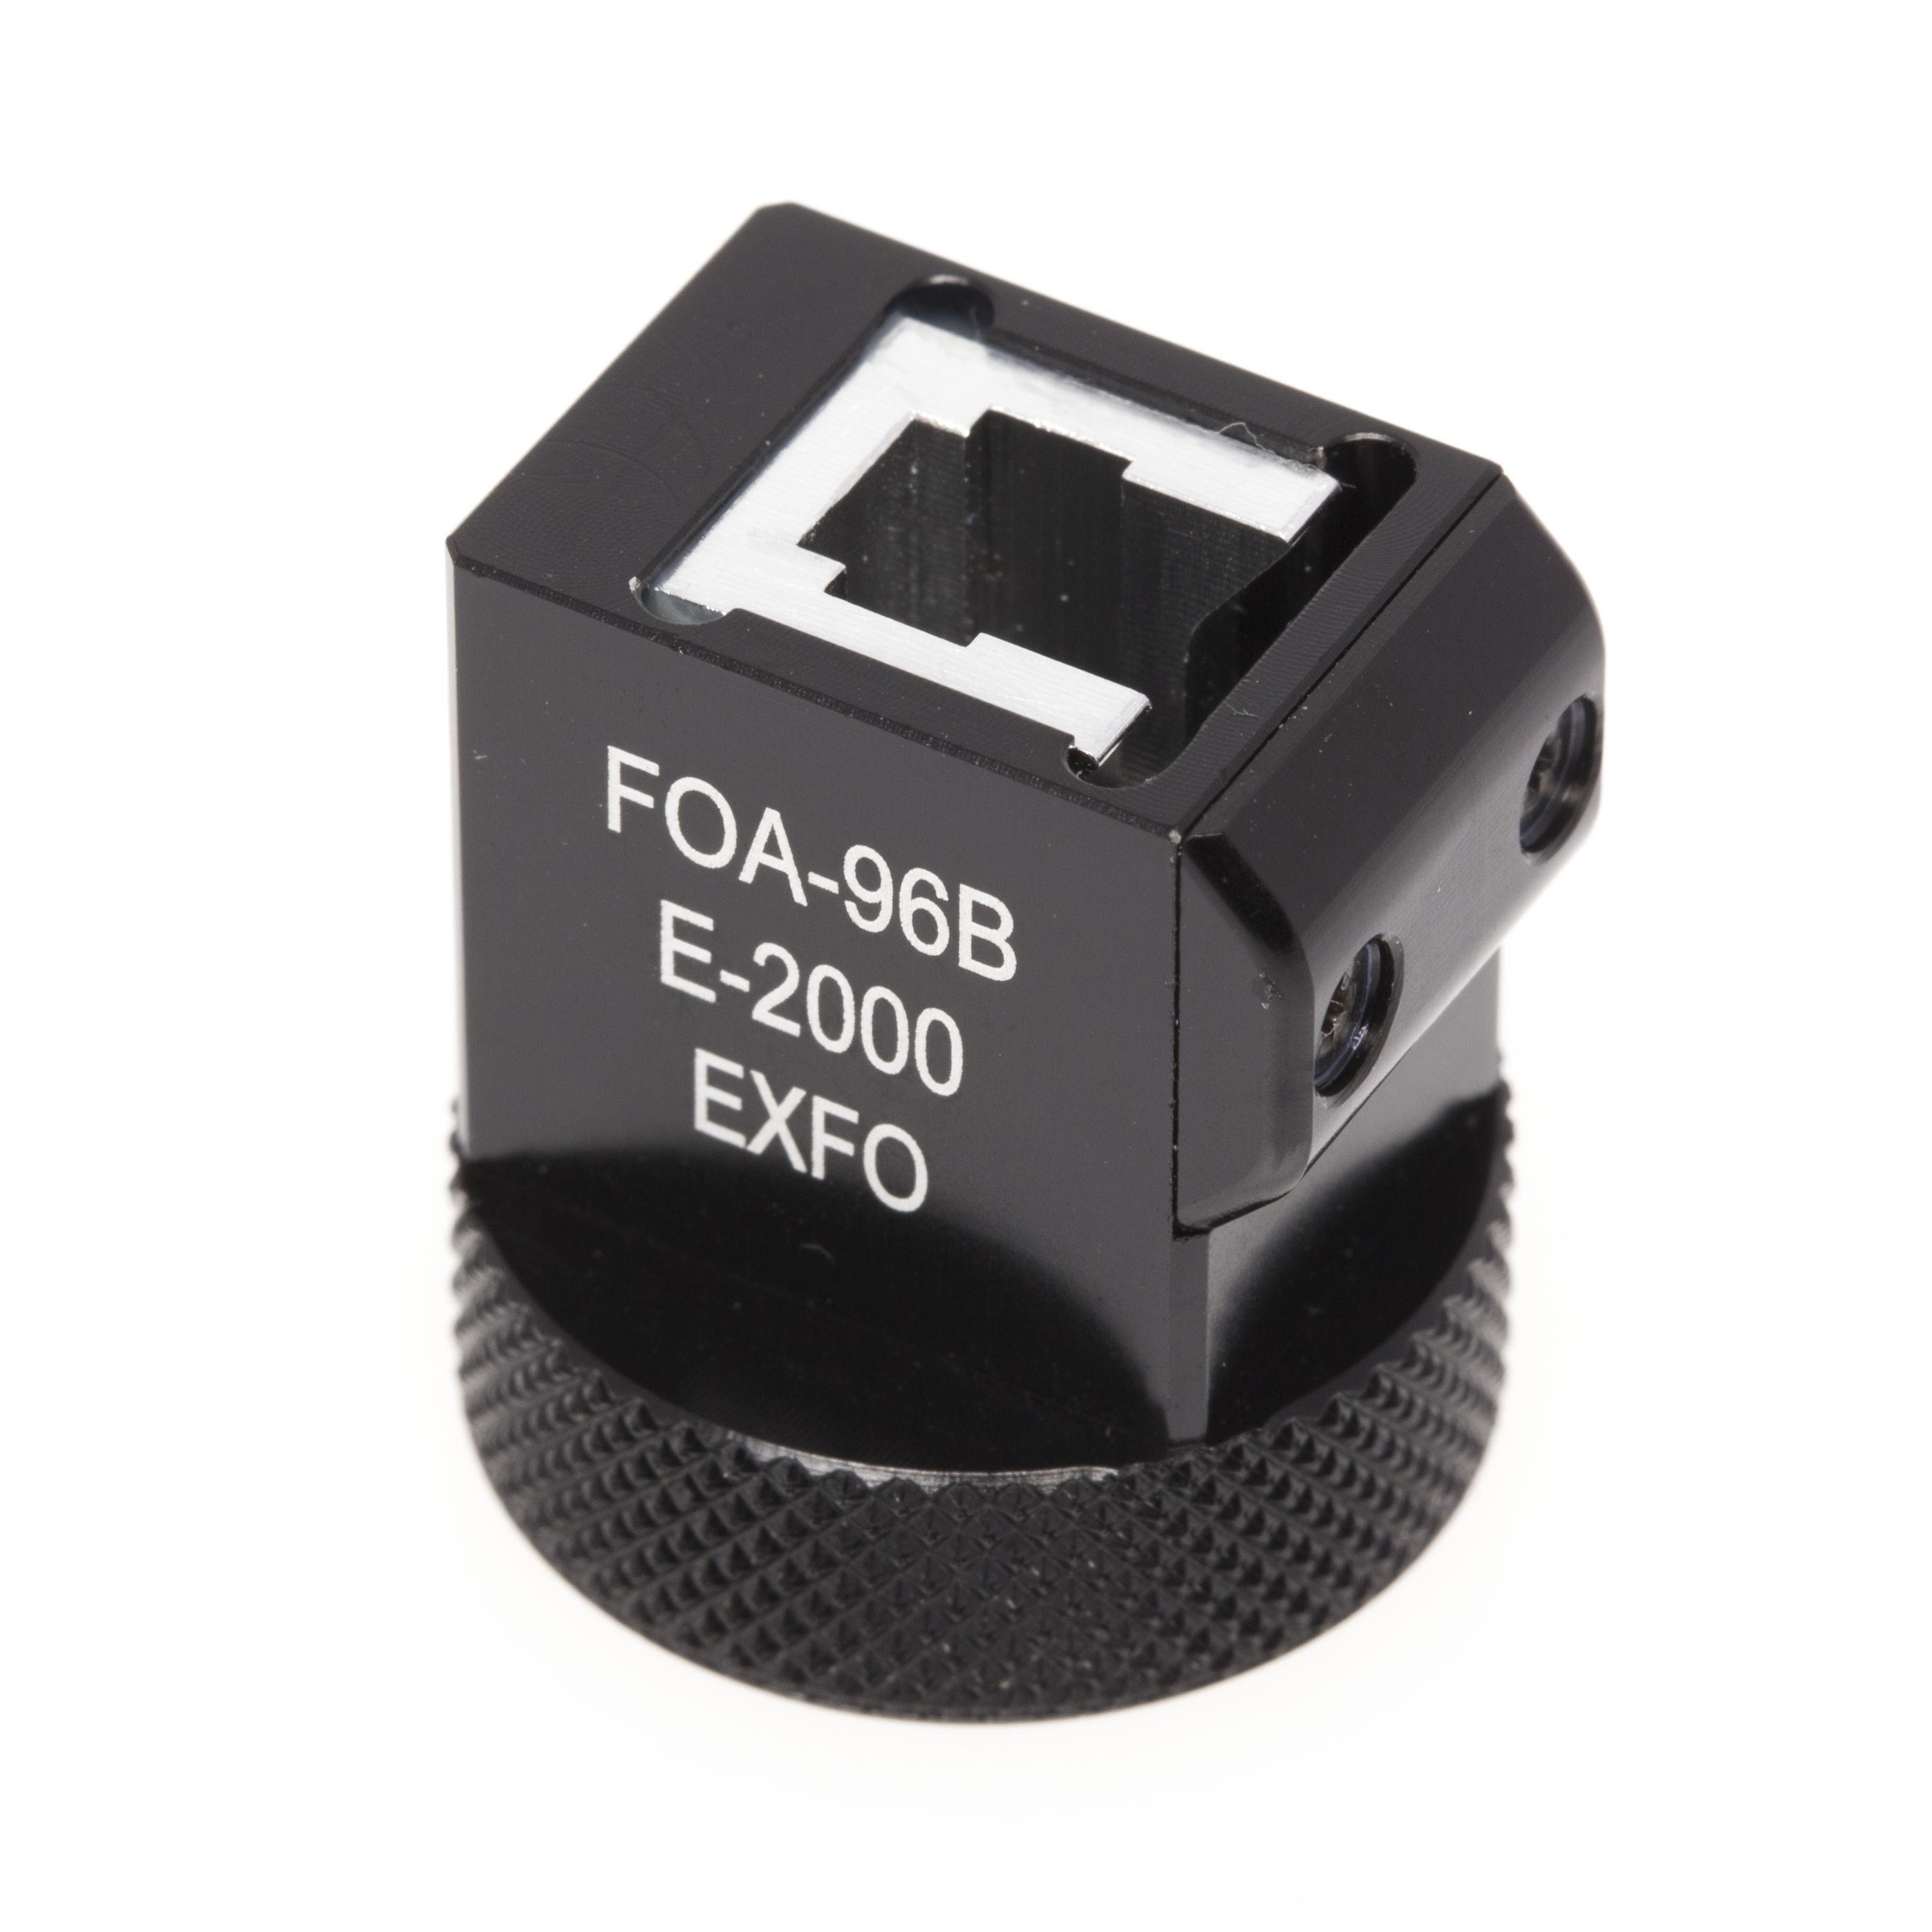 EXFO FOA-96B - Адаптер E-2000 для портативных и встроенных измерителей мощности